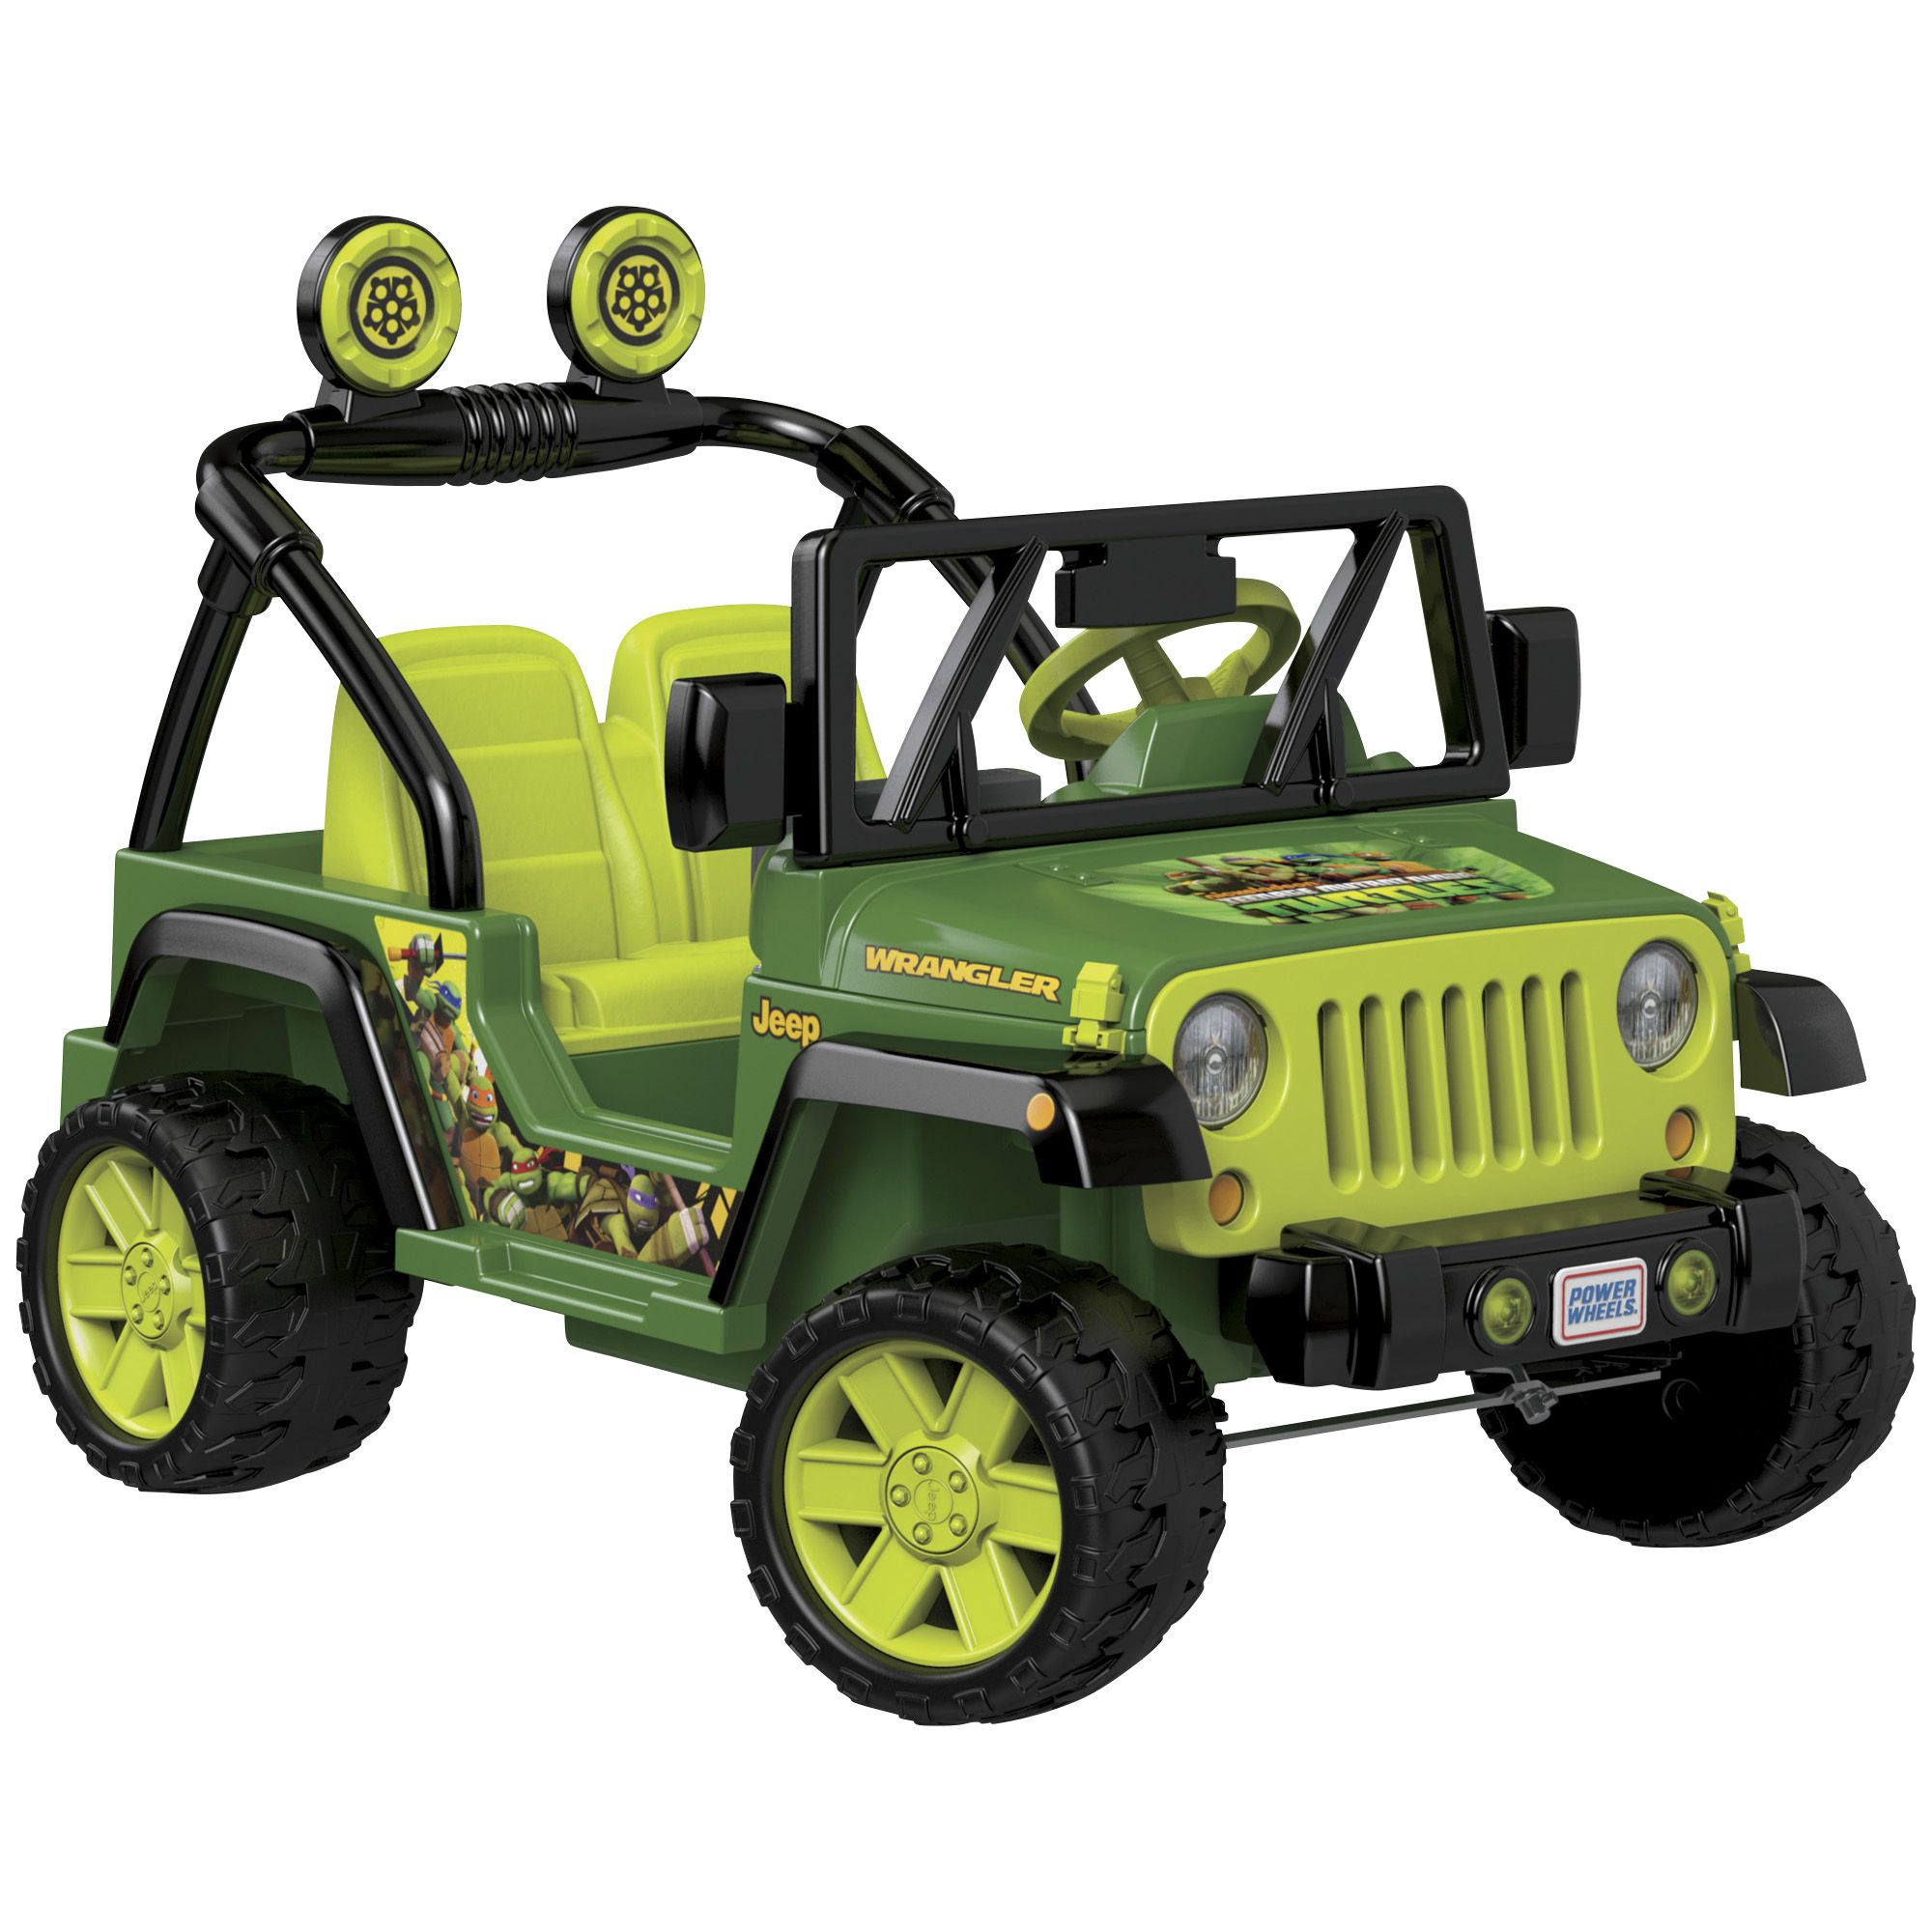 Fingerhut - Power Wheels 12V Teenage Mutant Ninja Turtles Jeep Wrangler  Ride-On